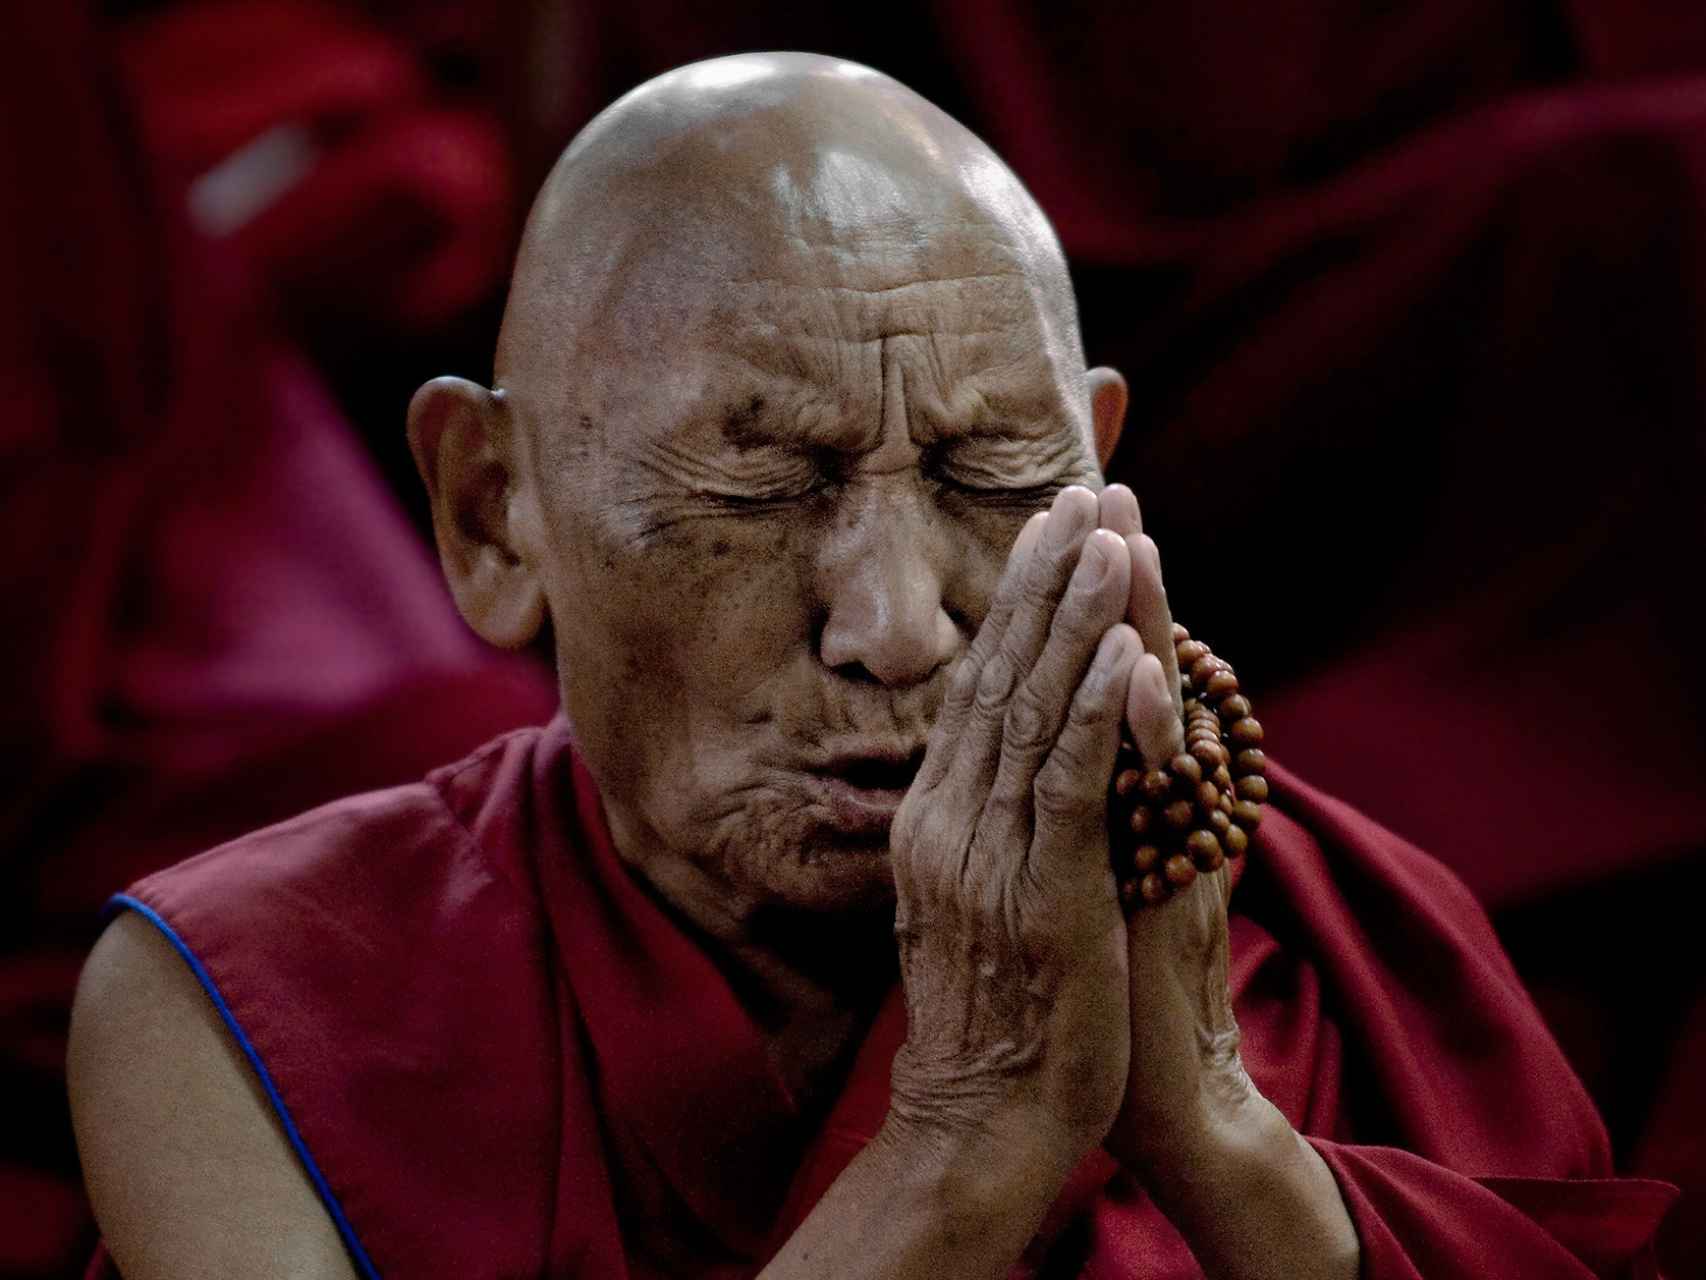 "Cuando el Dalai Lama muera, empezará la violencia en Tíbet"